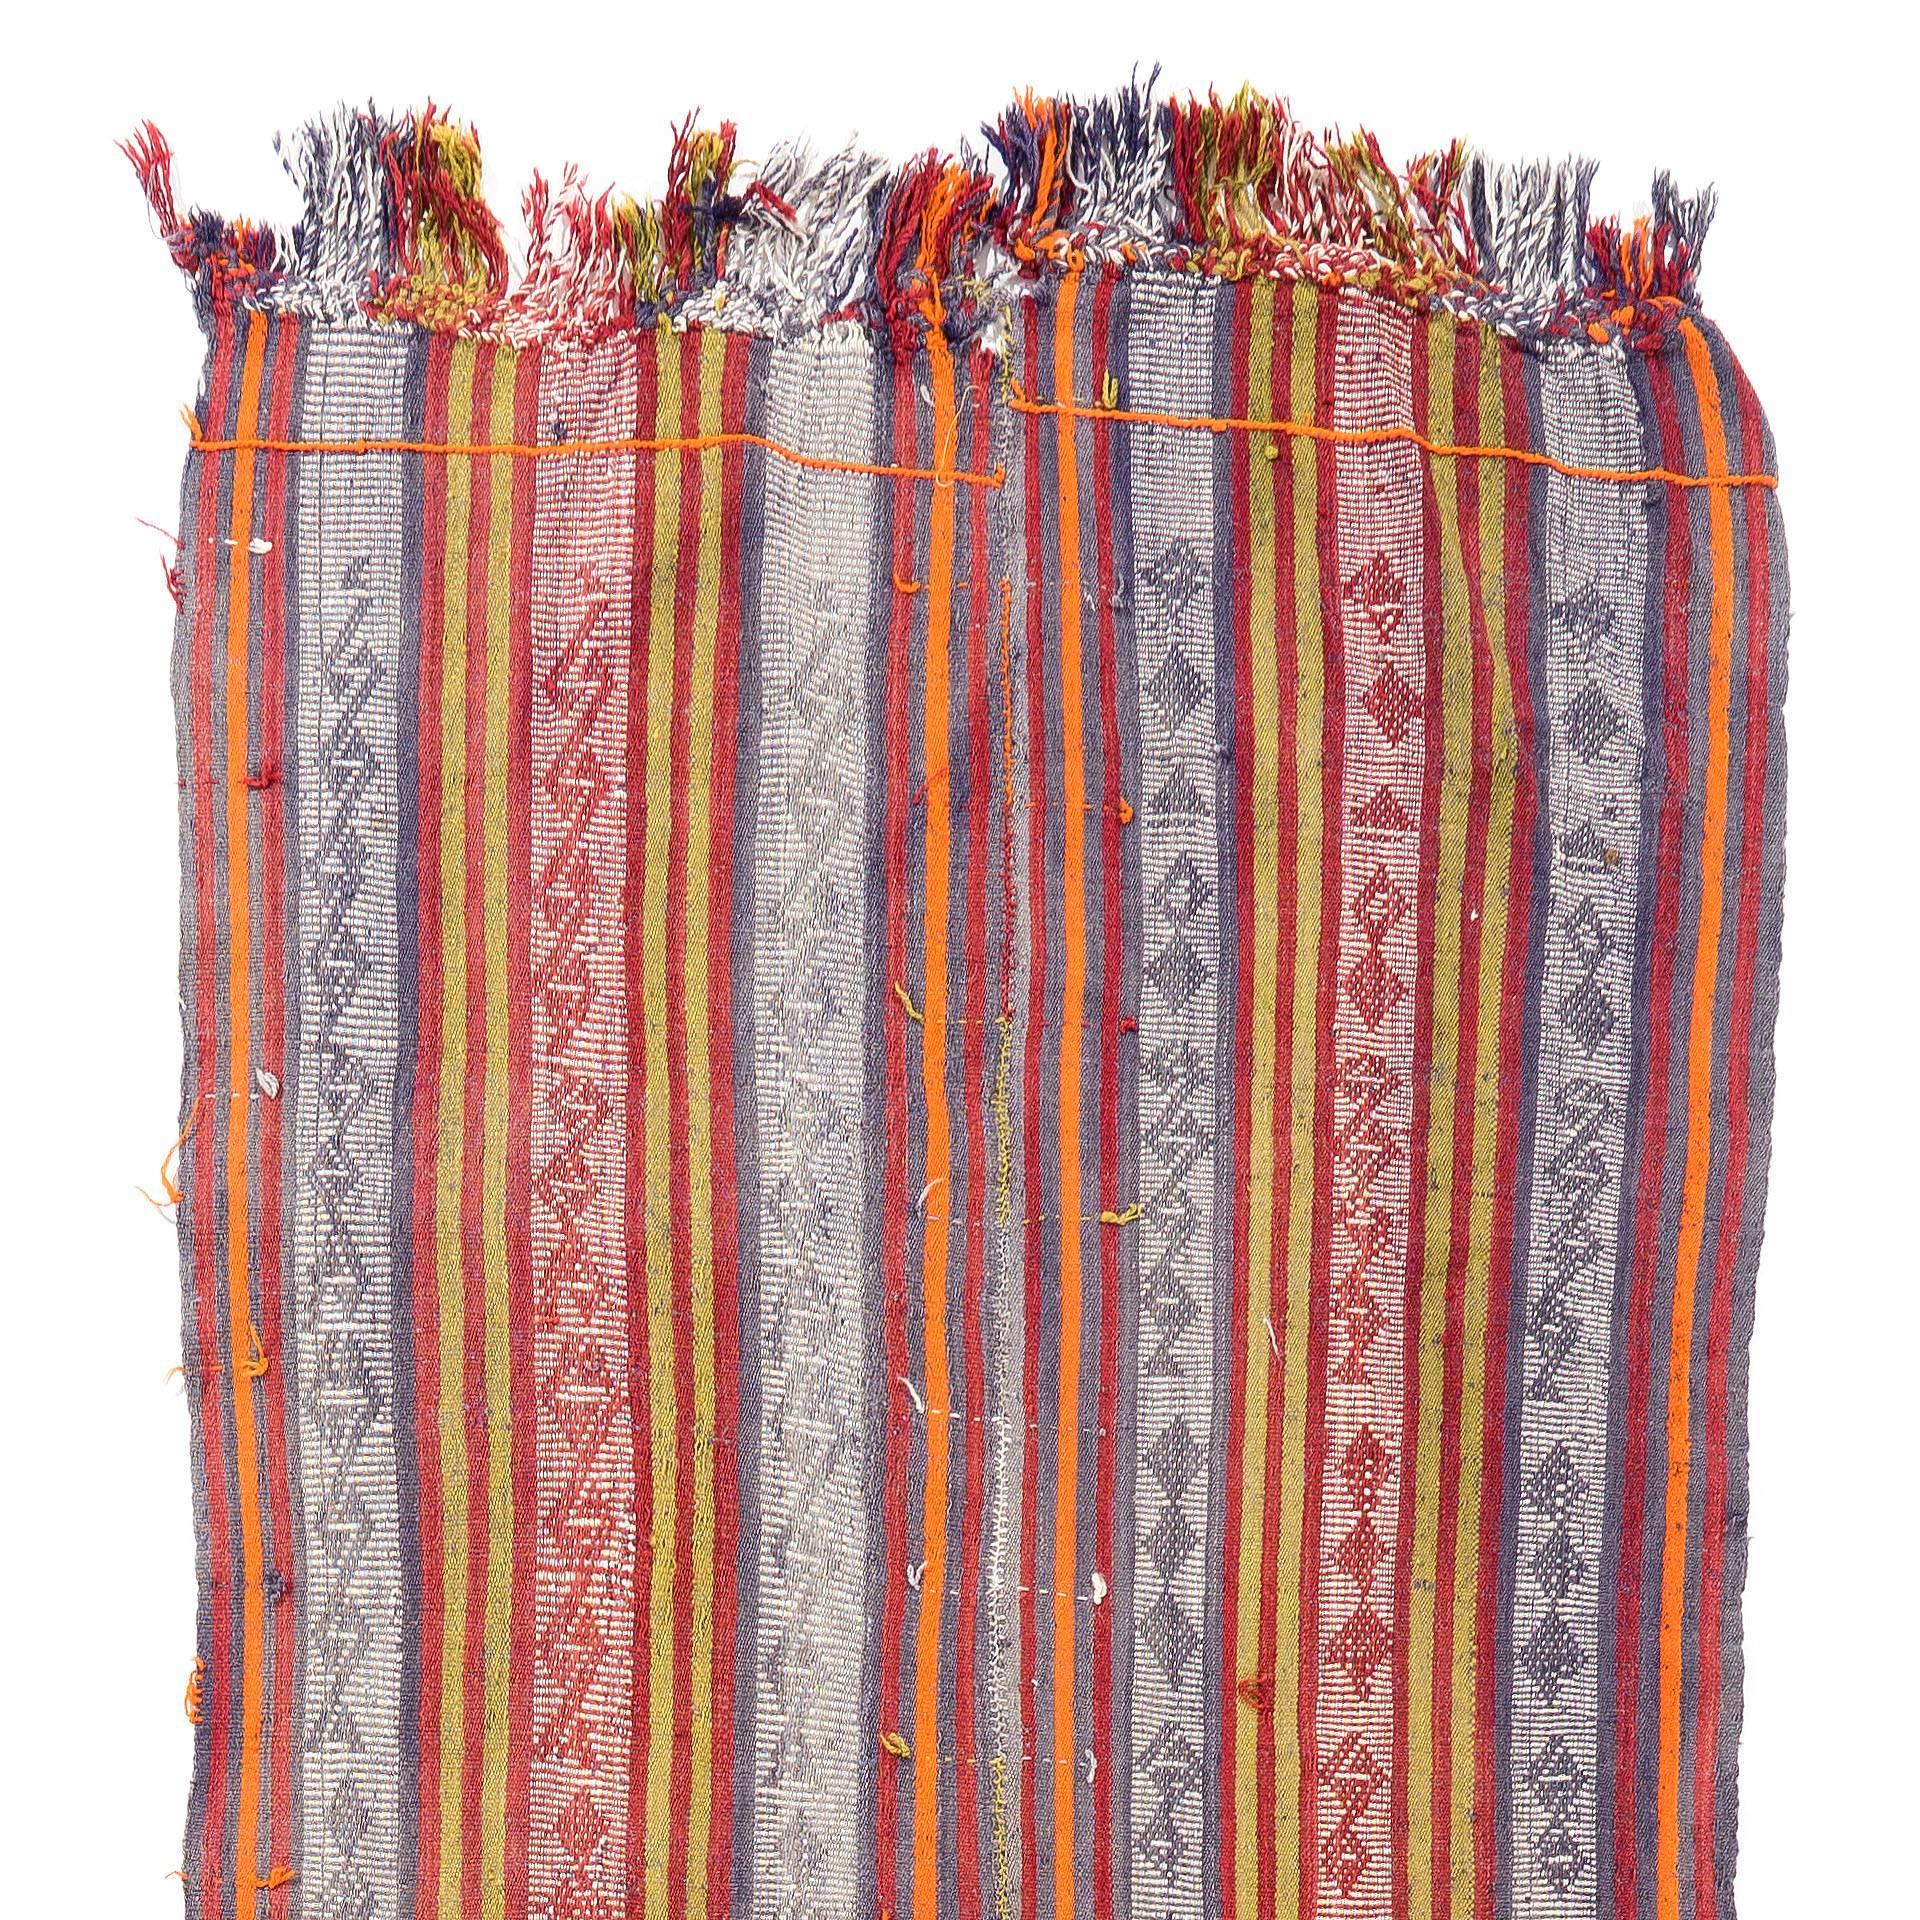 Un tapis de laine simple mais magnifique, tissé à la main par les tribus nomades du centre-sud de la Turquie. Très bon état, solide et propre.
Nous pouvons modifier les dimensions sur demande, c'est-à-dire les rendre plus courtes et/ou plus